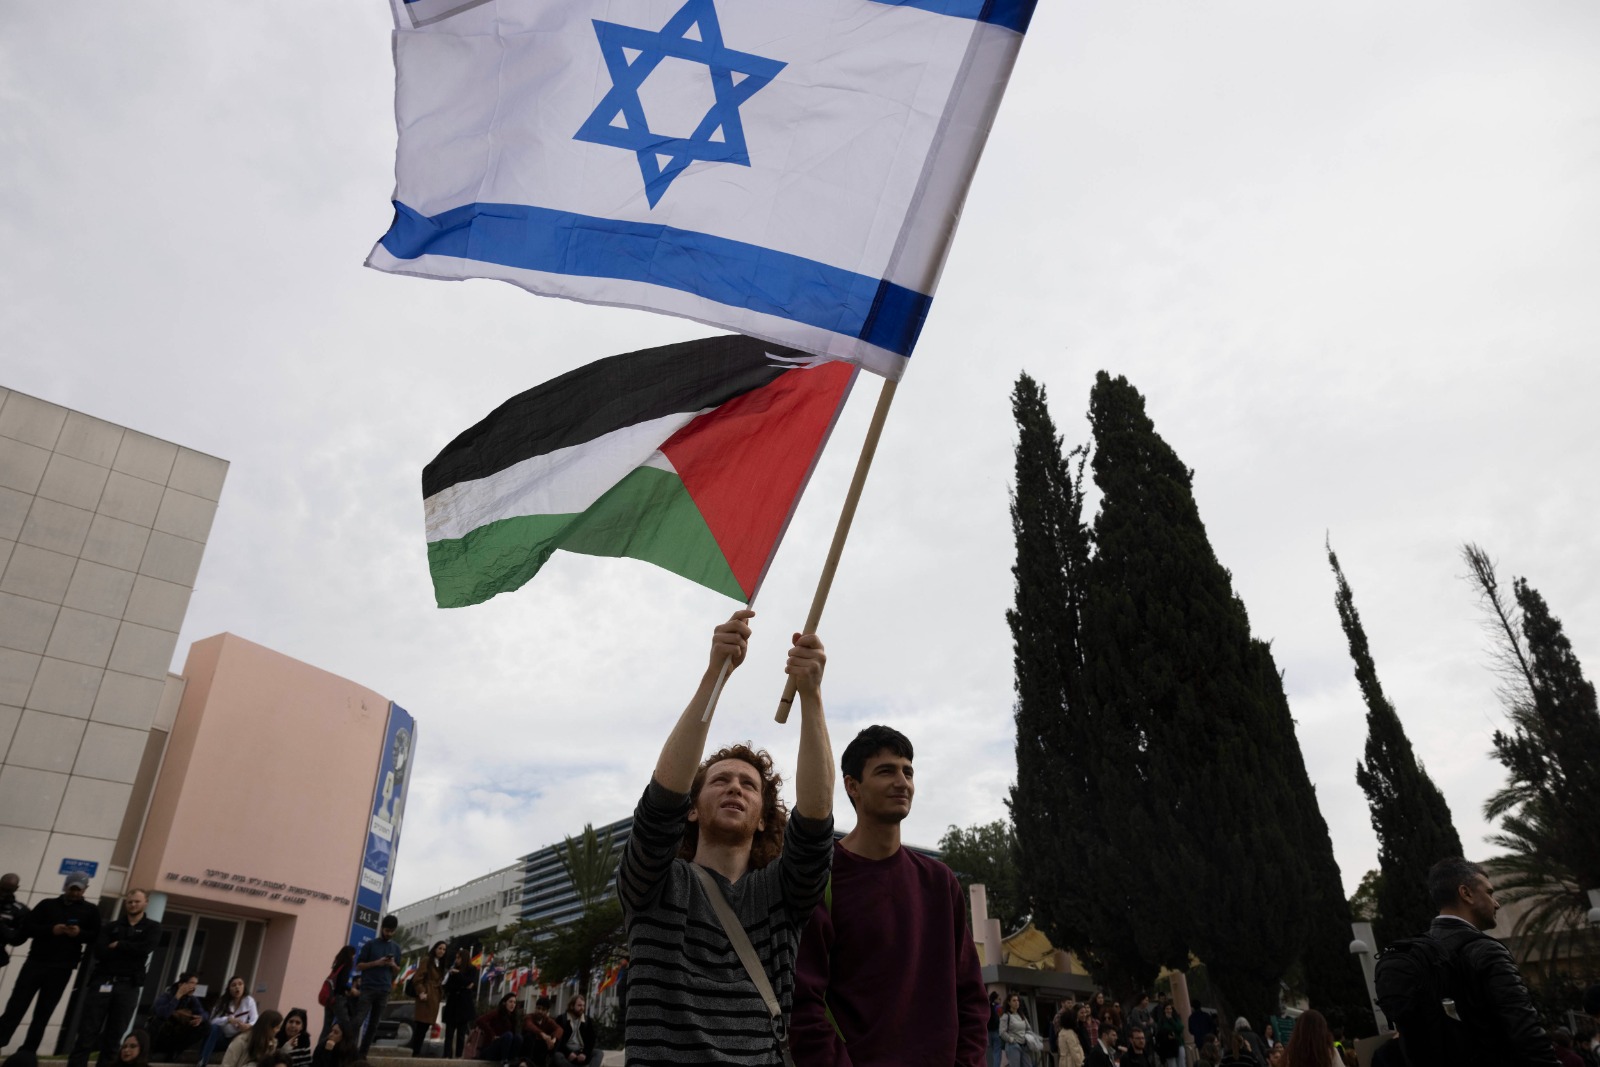 מניפי דגל פלסטין הותקפו. מפגינים באוניברסיטת תל אביב נגד הרפורמות המשפטיות, ינואר 2023 (צילום: אורן זיו)